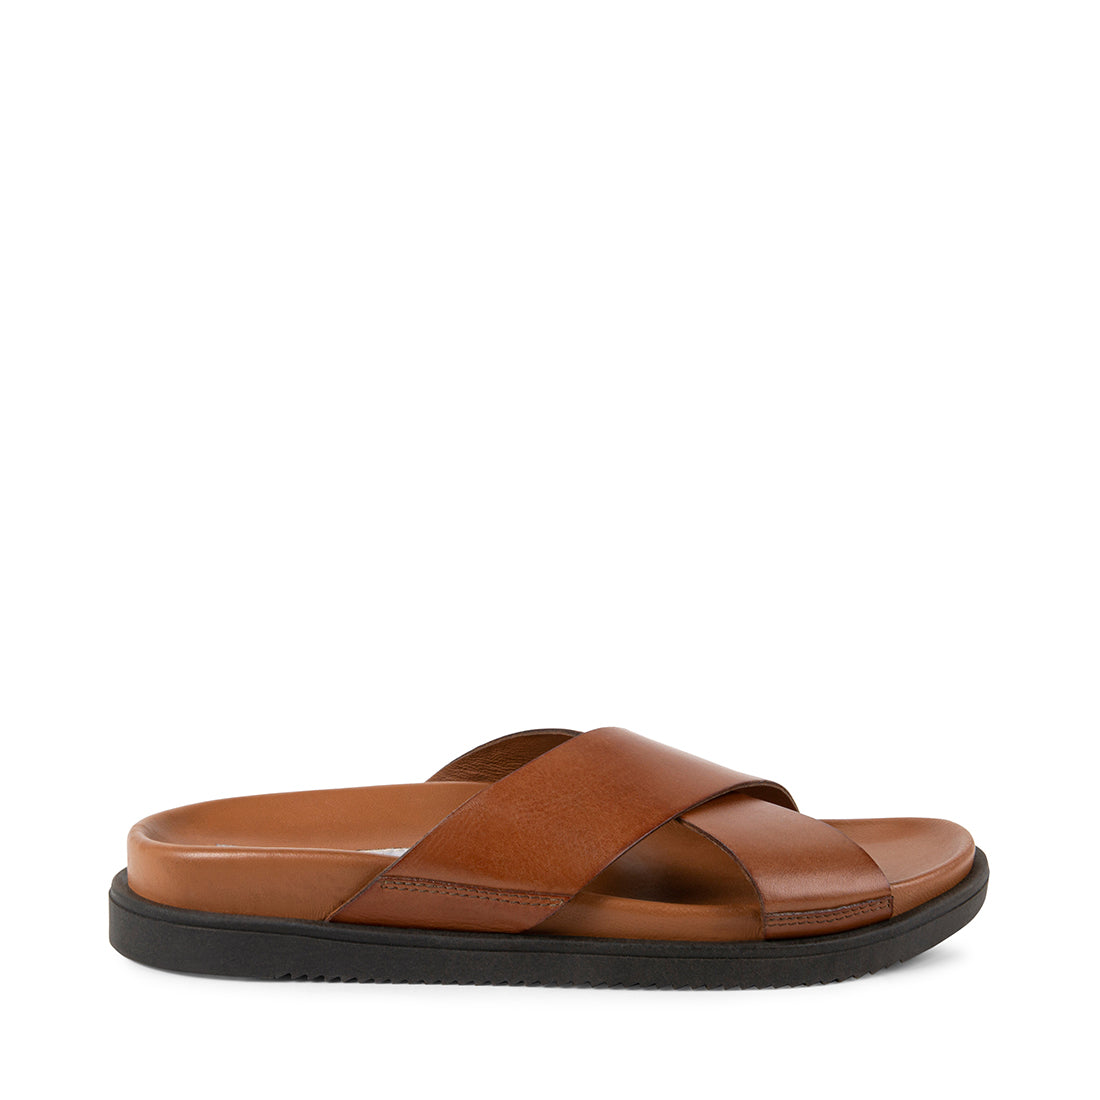 RICARDO Tan Leather Men's Sandals | Men's Designer Sandals – Steve ...